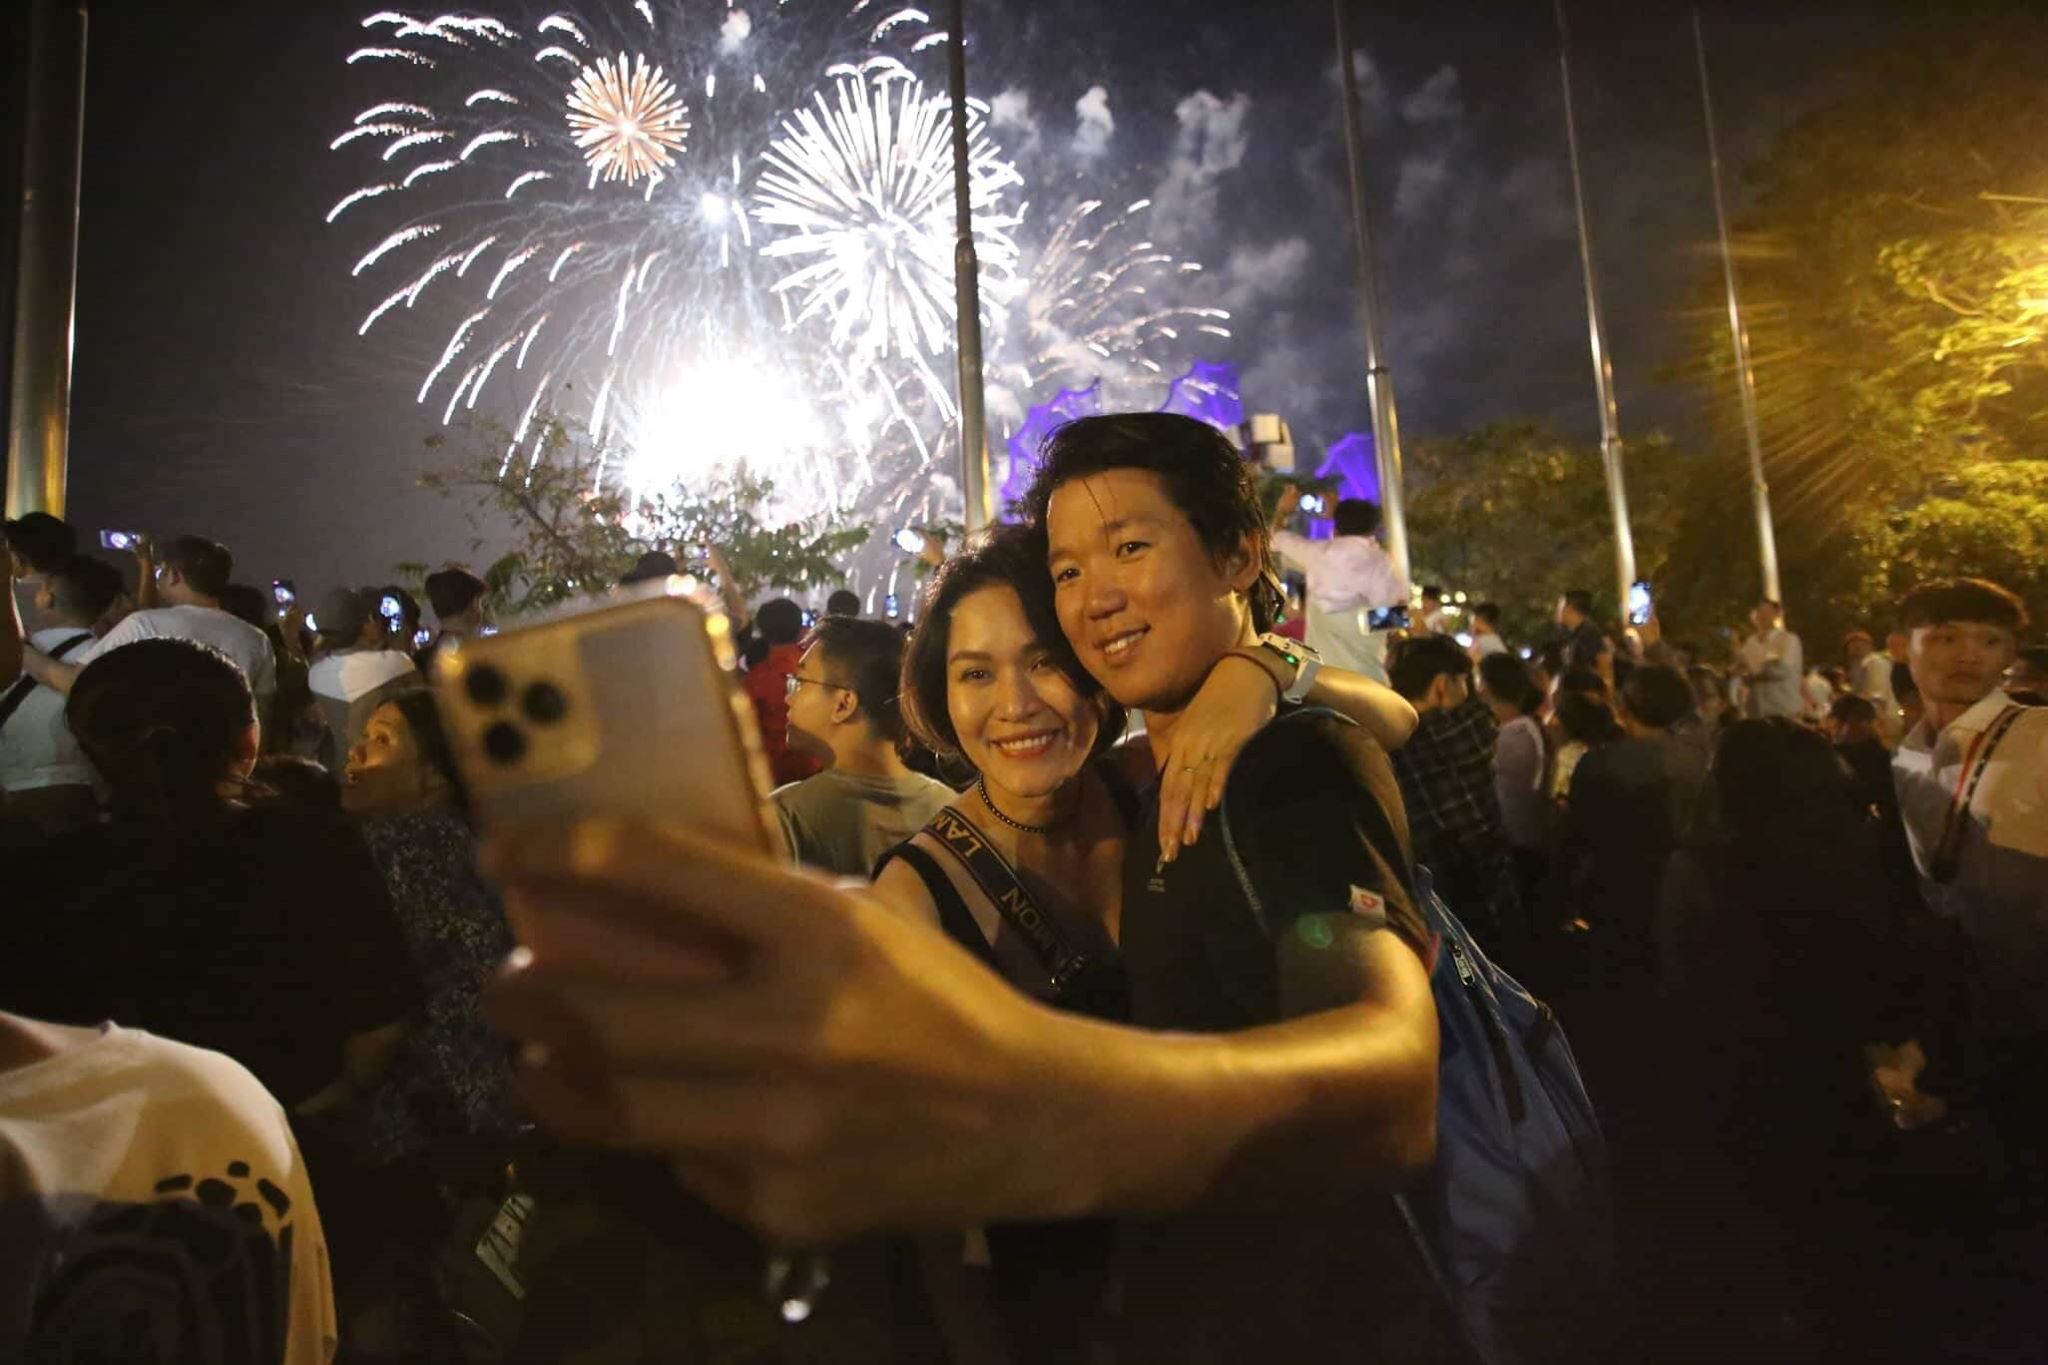 Năm mới 2020 đang đến gần, hãy chuẩn bị cho mình một năm mới bằng những điều tốt đẹp và đầy ý nghĩa. Hình ảnh này sẽ giúp bạn cảm nhận rõ hơn tinh thần đón năm mới của người Việt Nam.